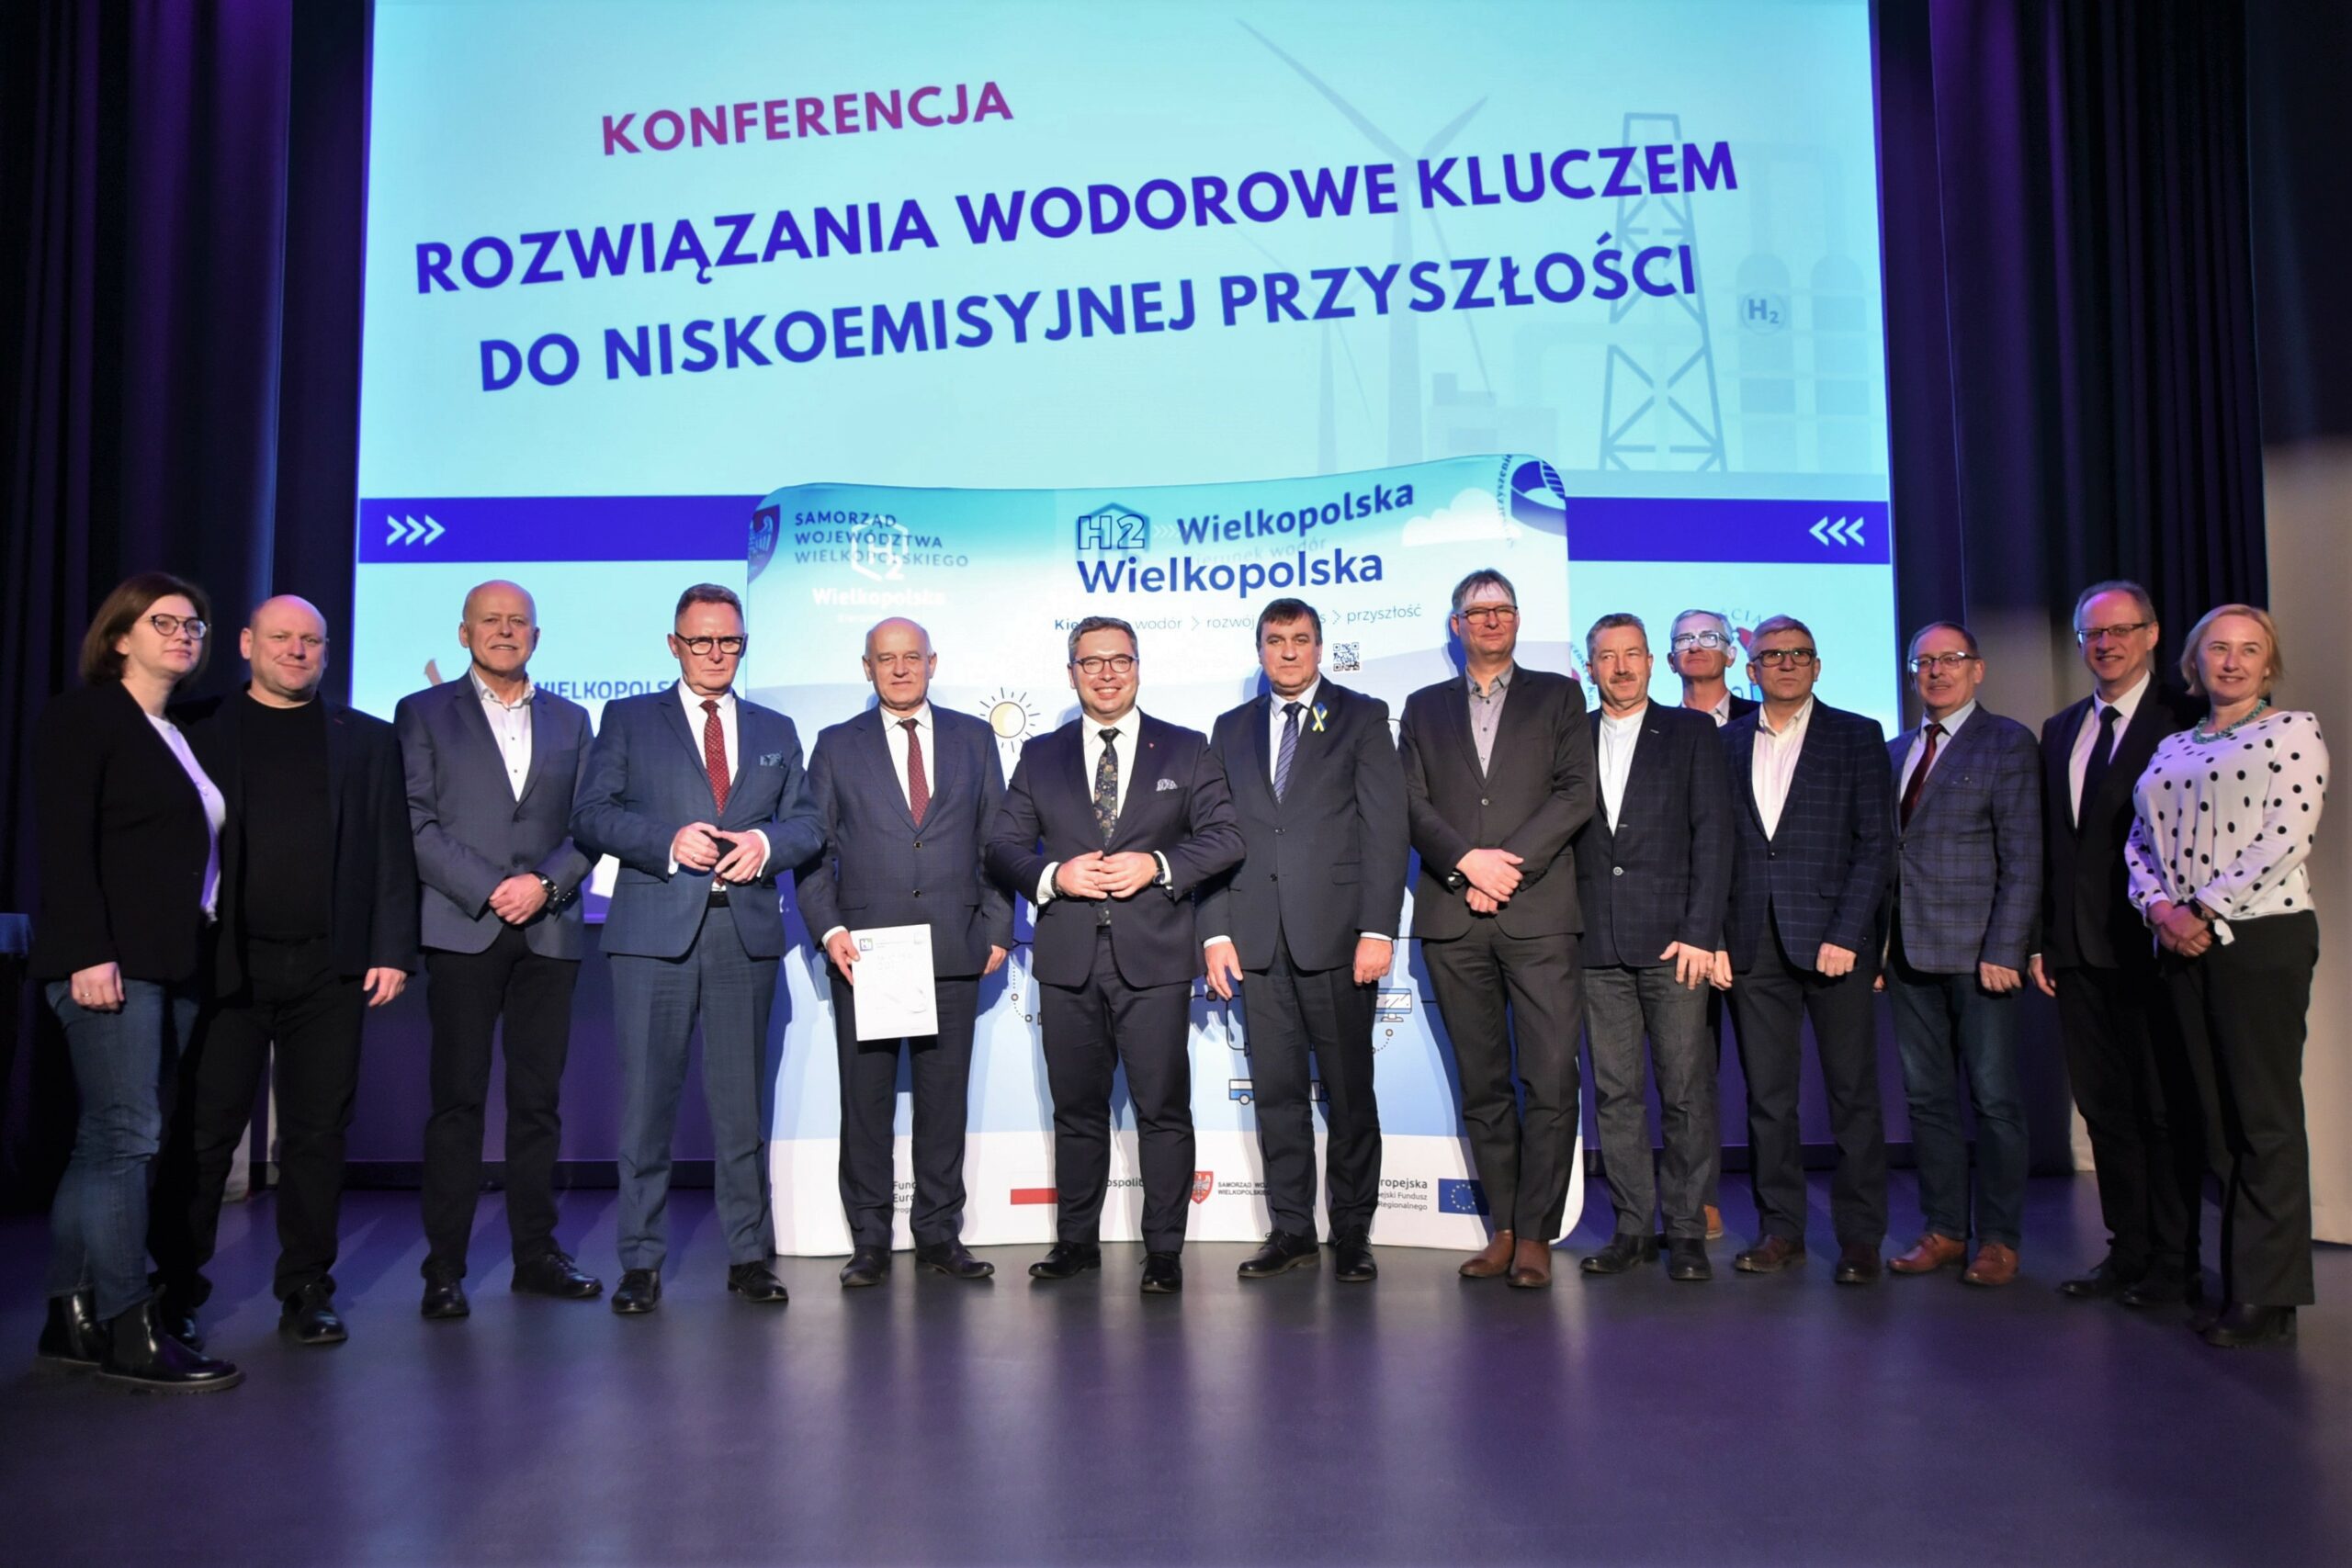 Tematyka gospodarki wodorowej w Kościanie – konferencja „Rozwiązania wodorowe kluczem do niskoemisyjnej przyszłości”